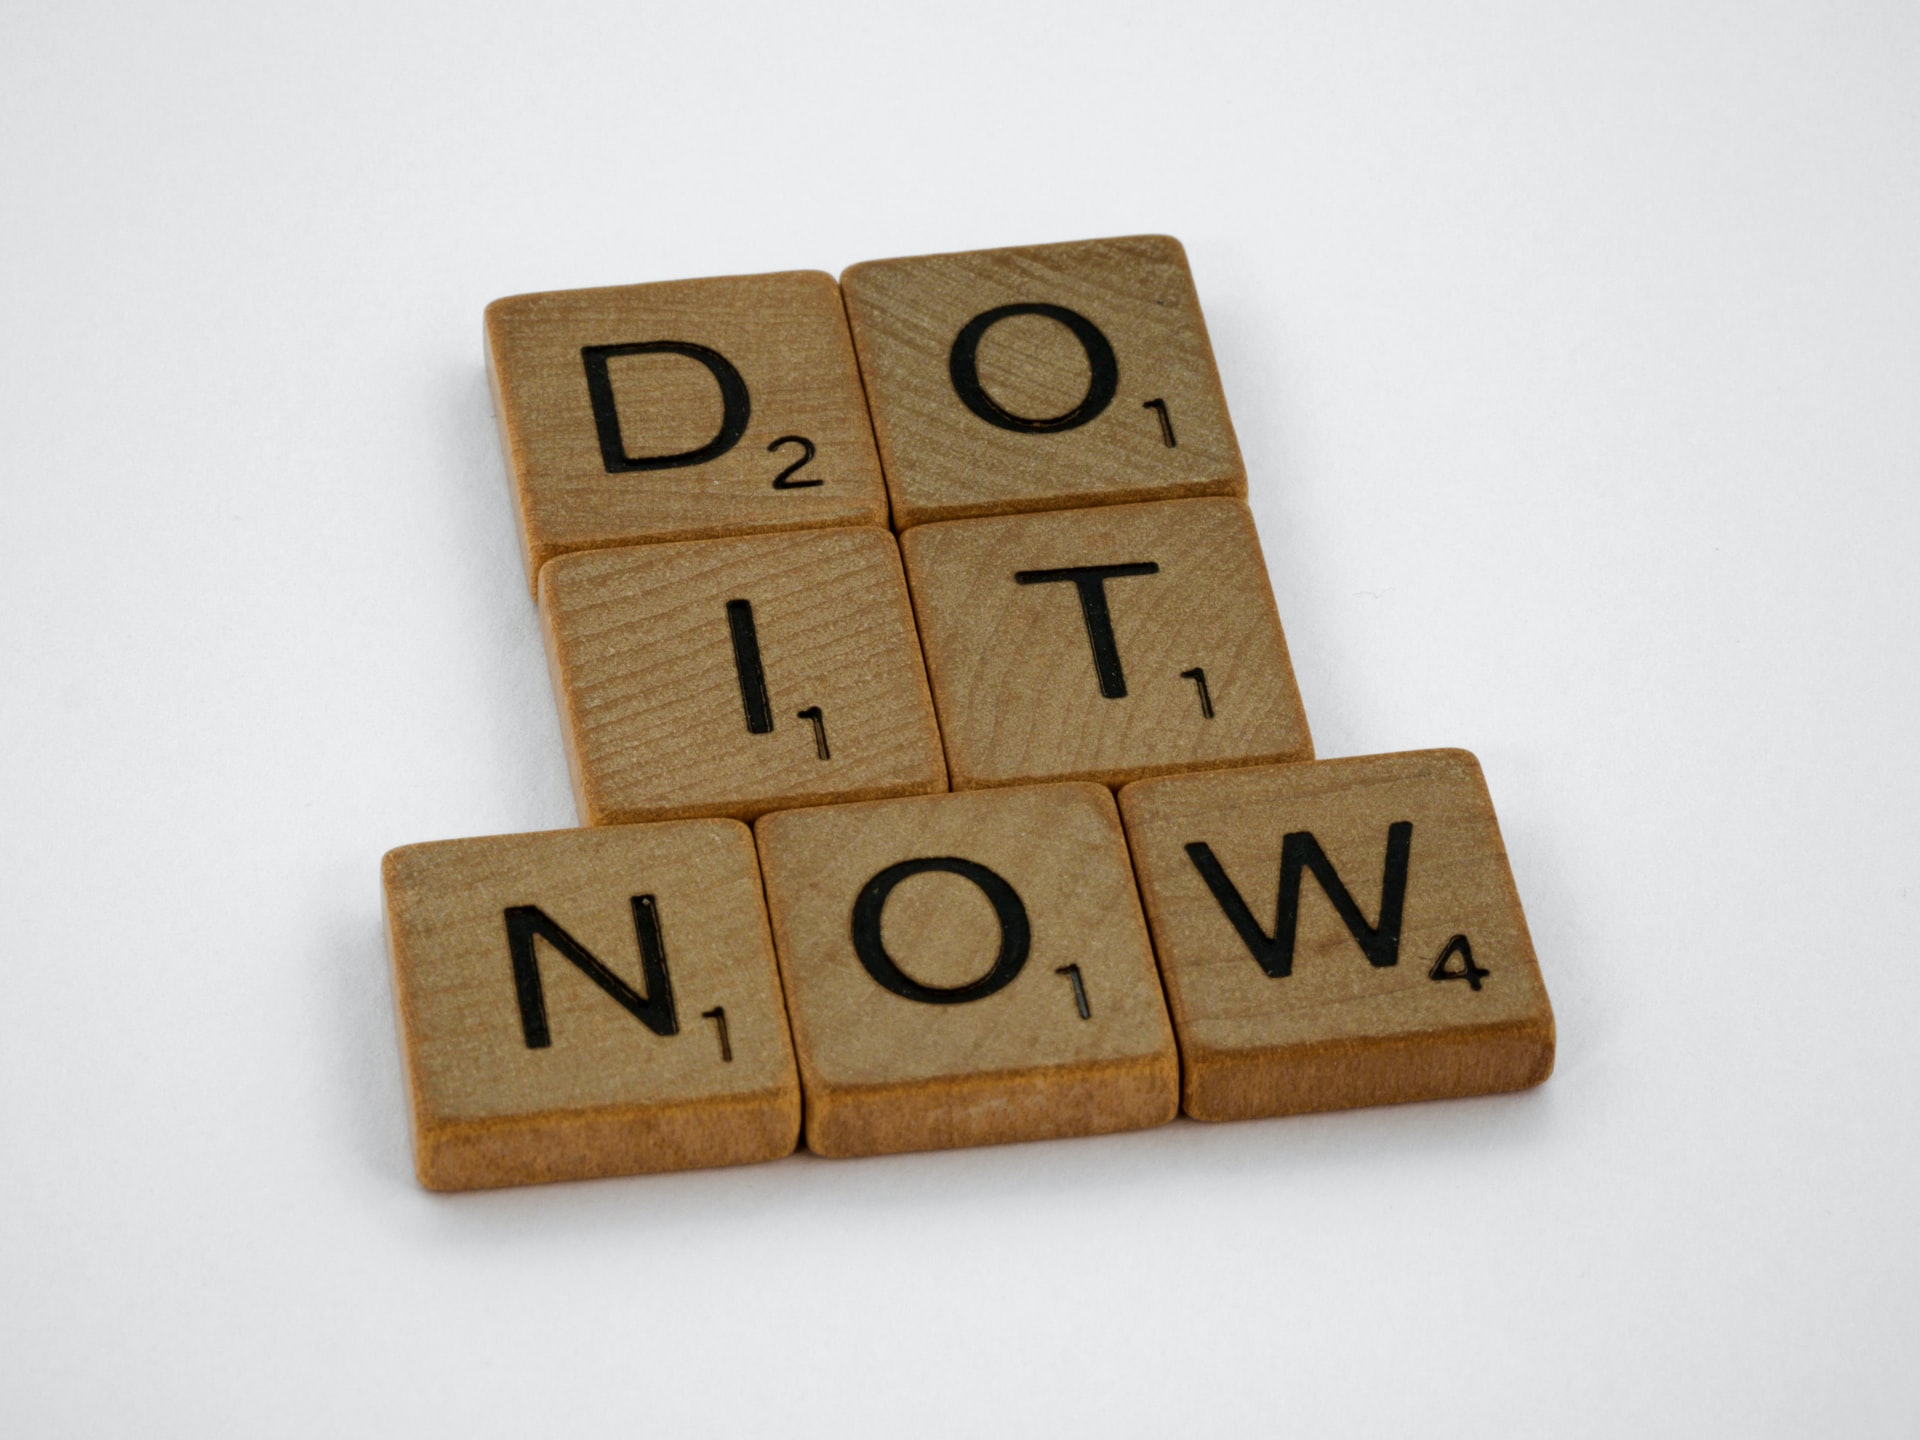 Imagem com a descrição do it now (faça agora) para o artigo sobre como evitar a procrastinação.